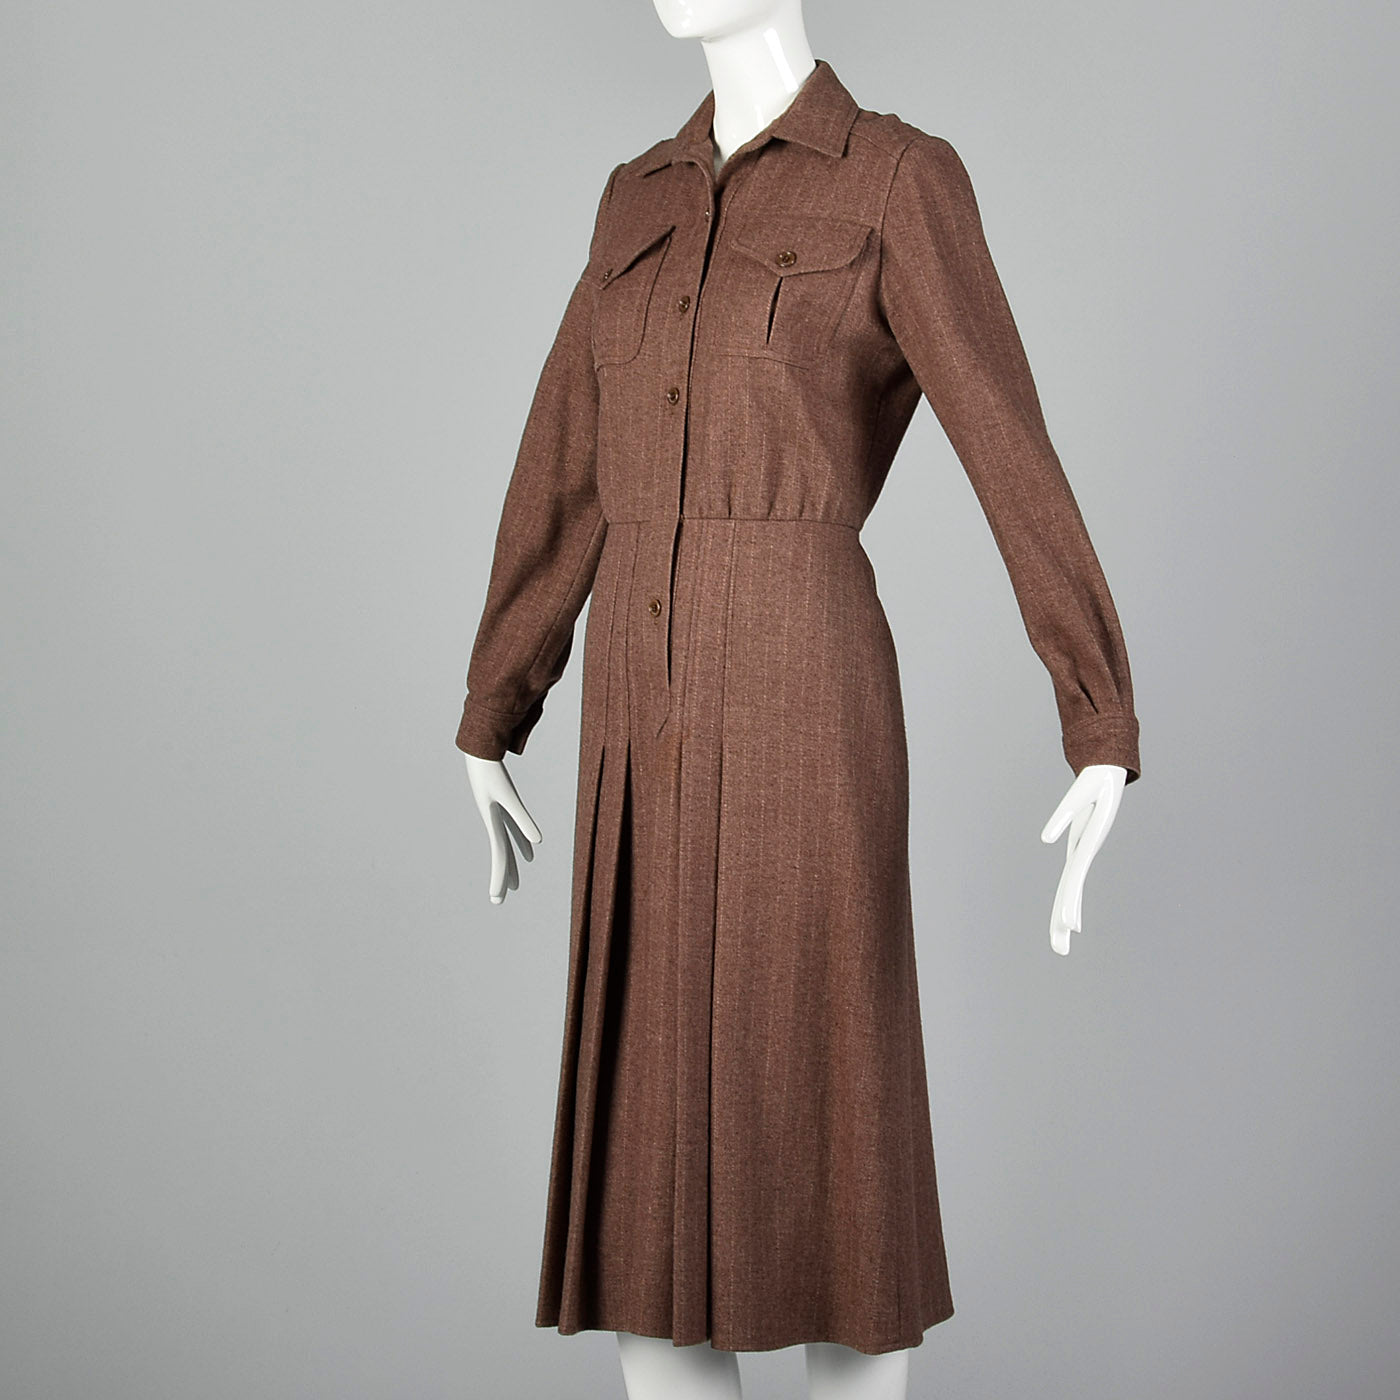 1970s Oscar de la Renta Long Sleeve Wool Dress